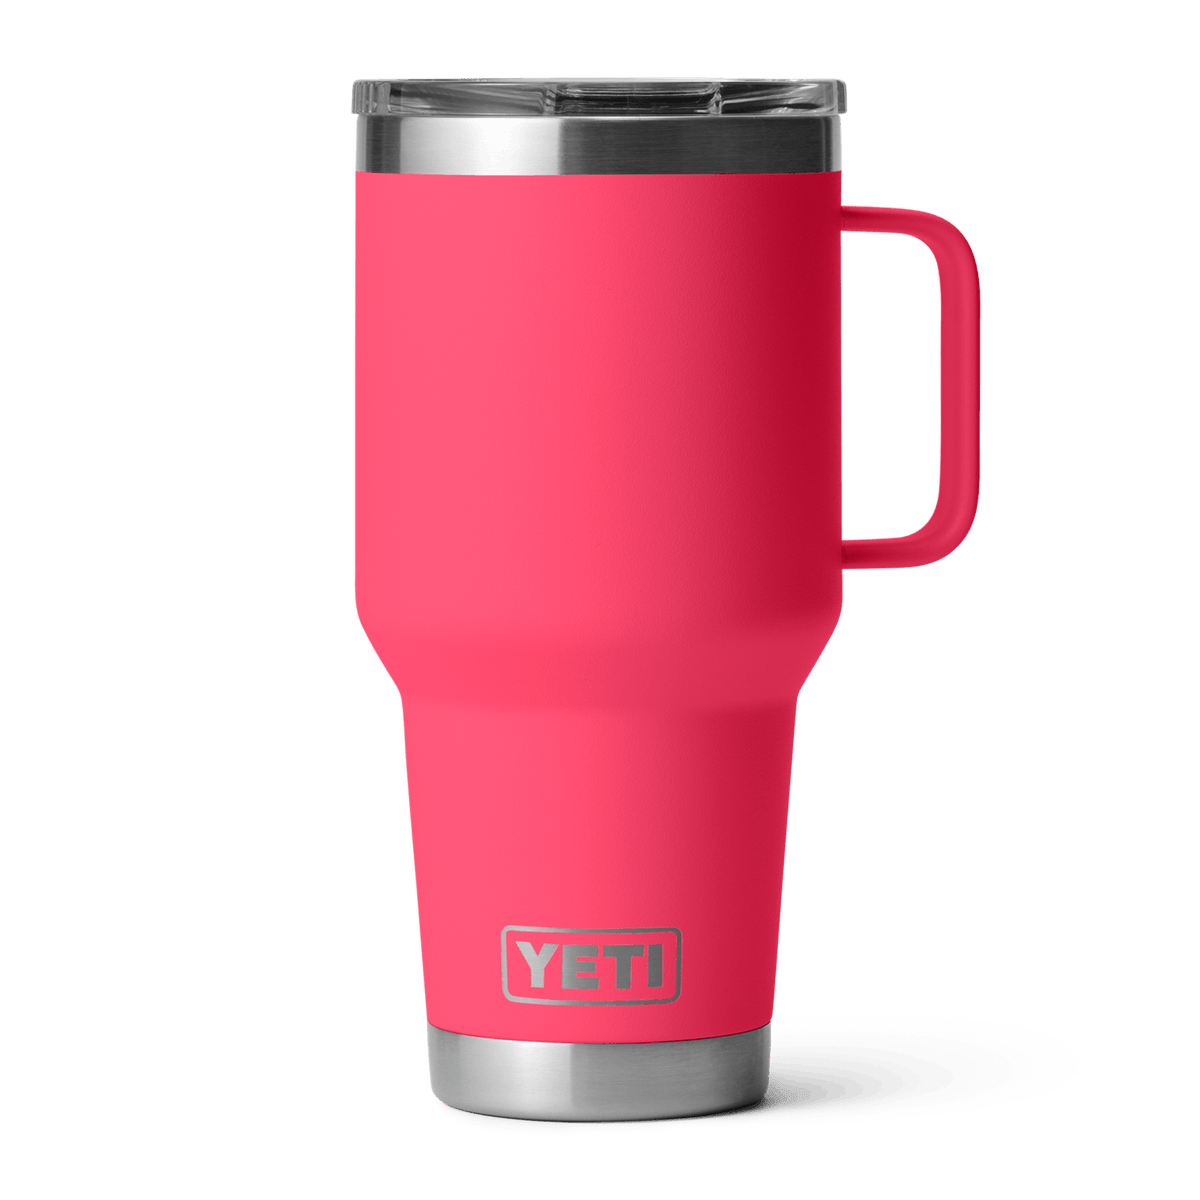 Yeti Rambler 30oz Travel Mug with Stronghold Lid